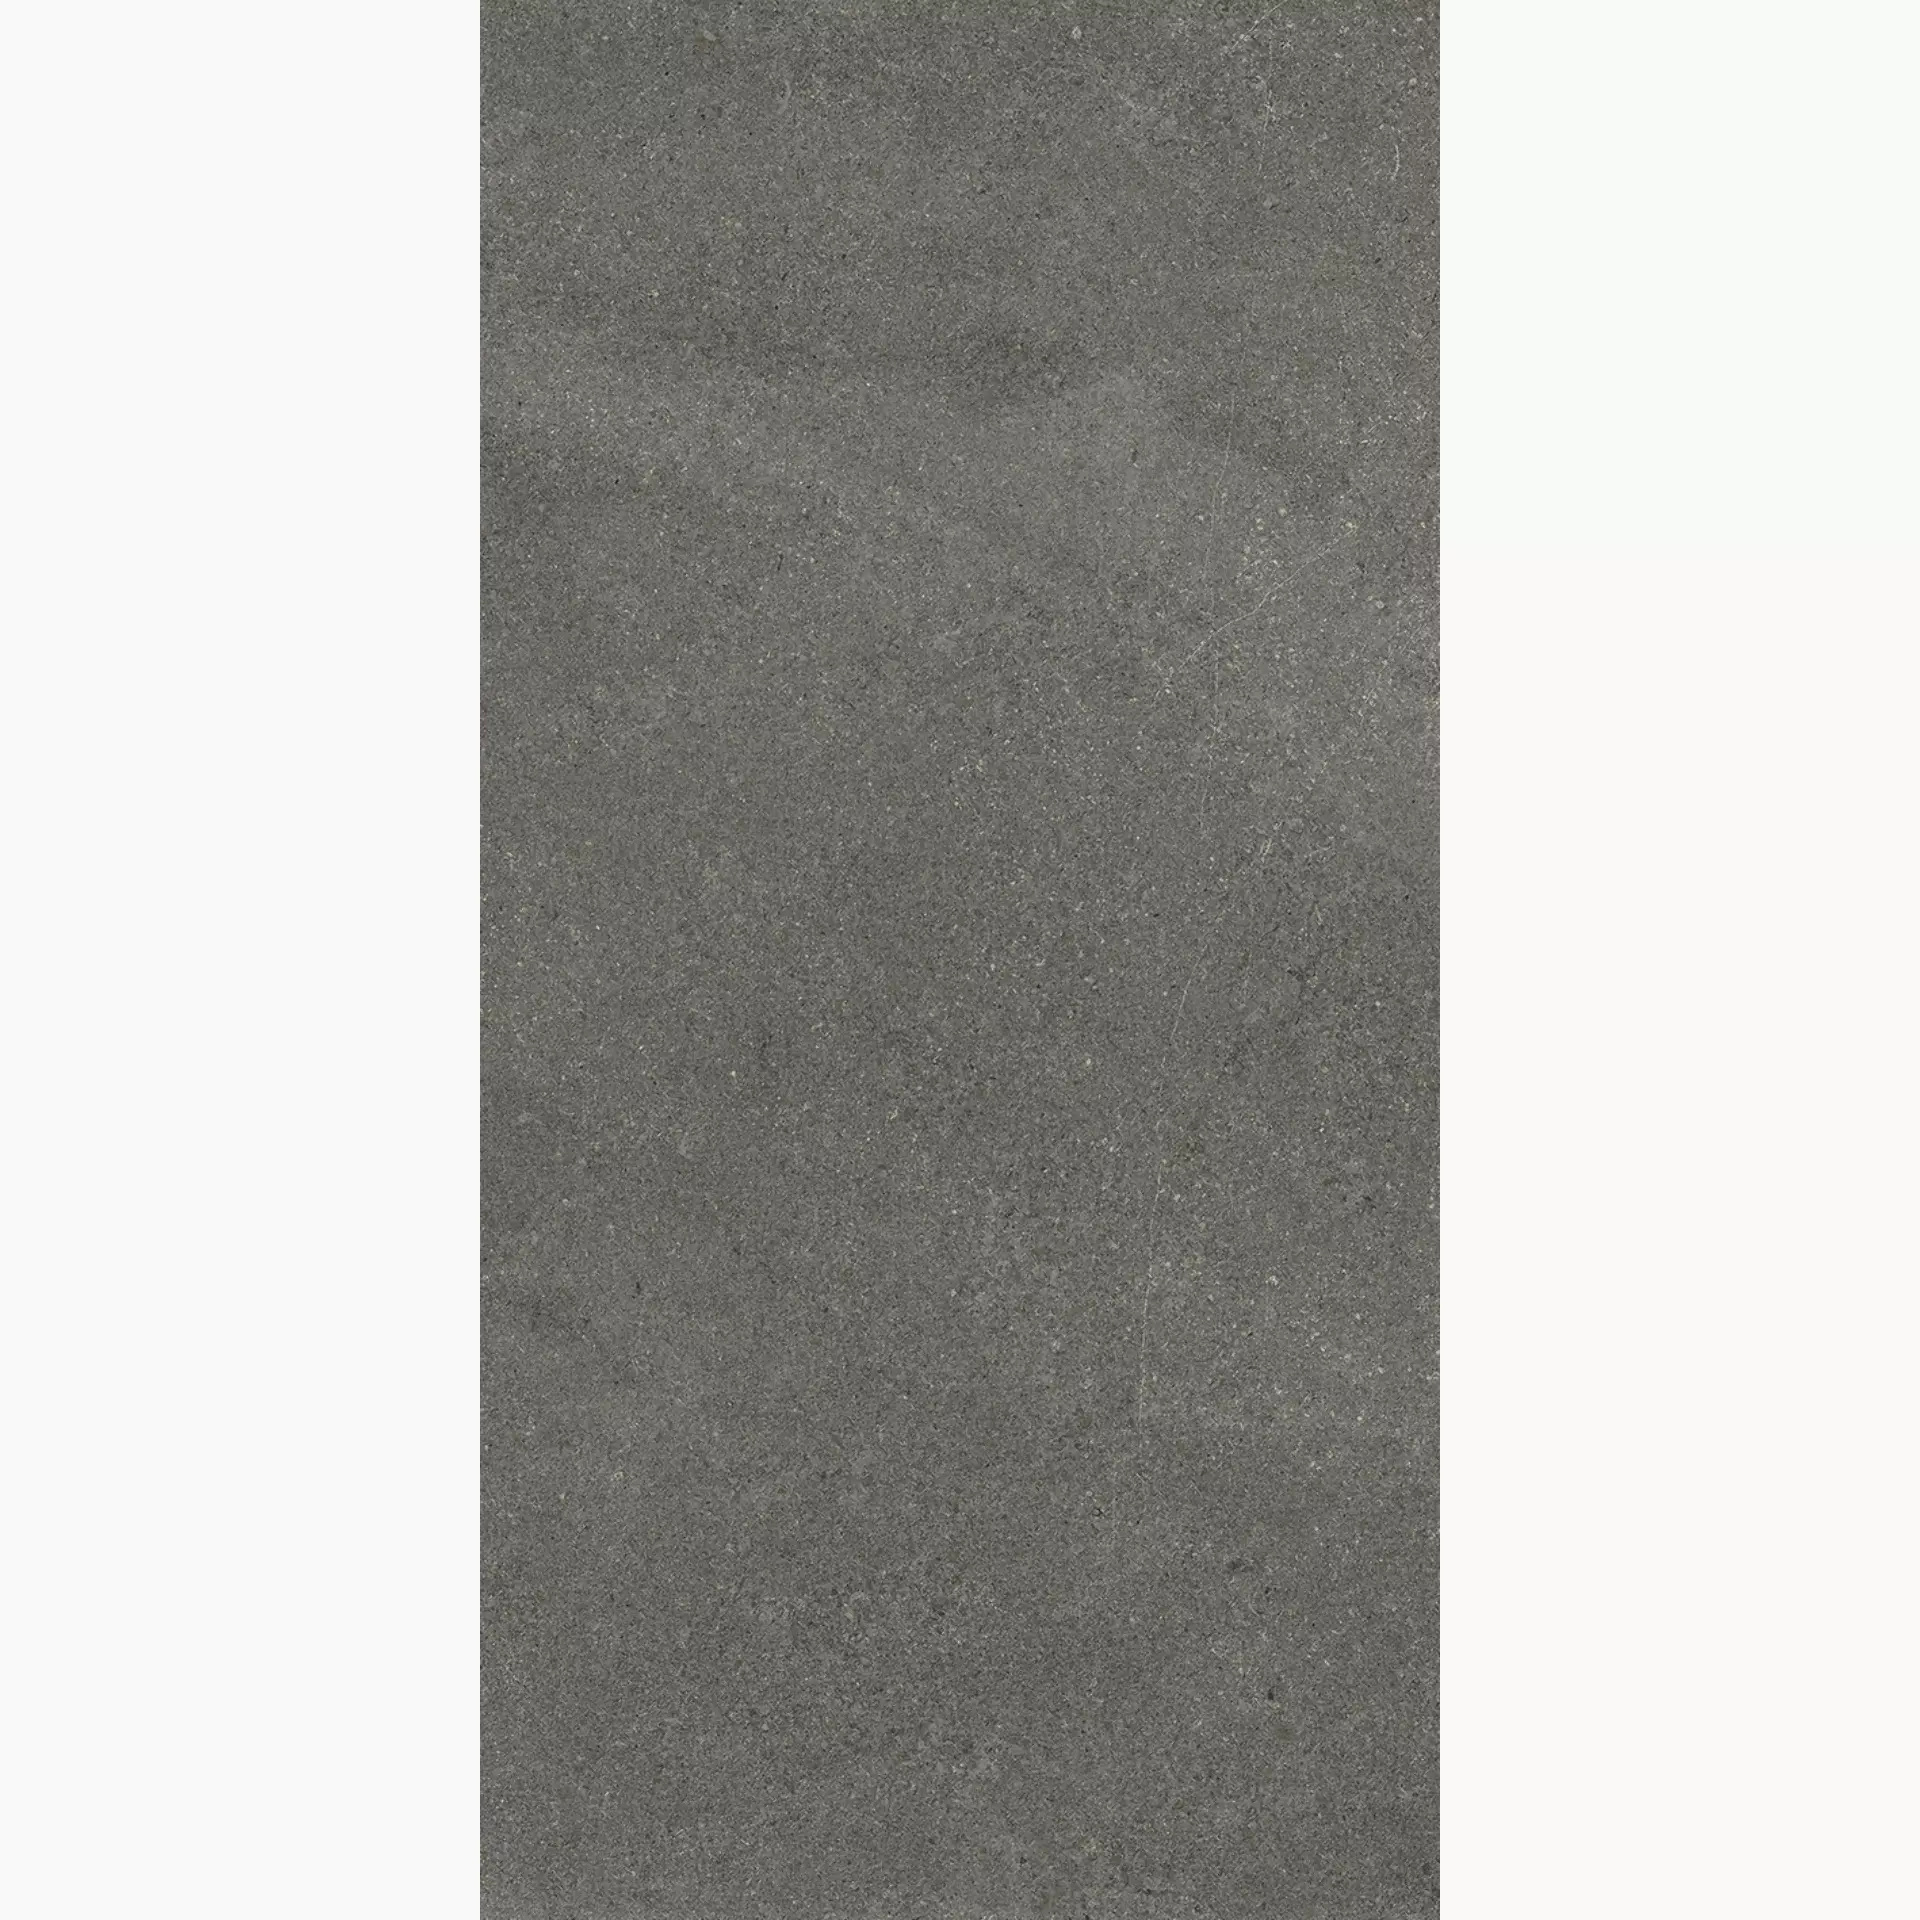 Wandfliese,Bodenfliese Villeroy & Boch Lucca Rock Matt Rock 2761-LS90 matt 60x120cm rektifiziert 10mm